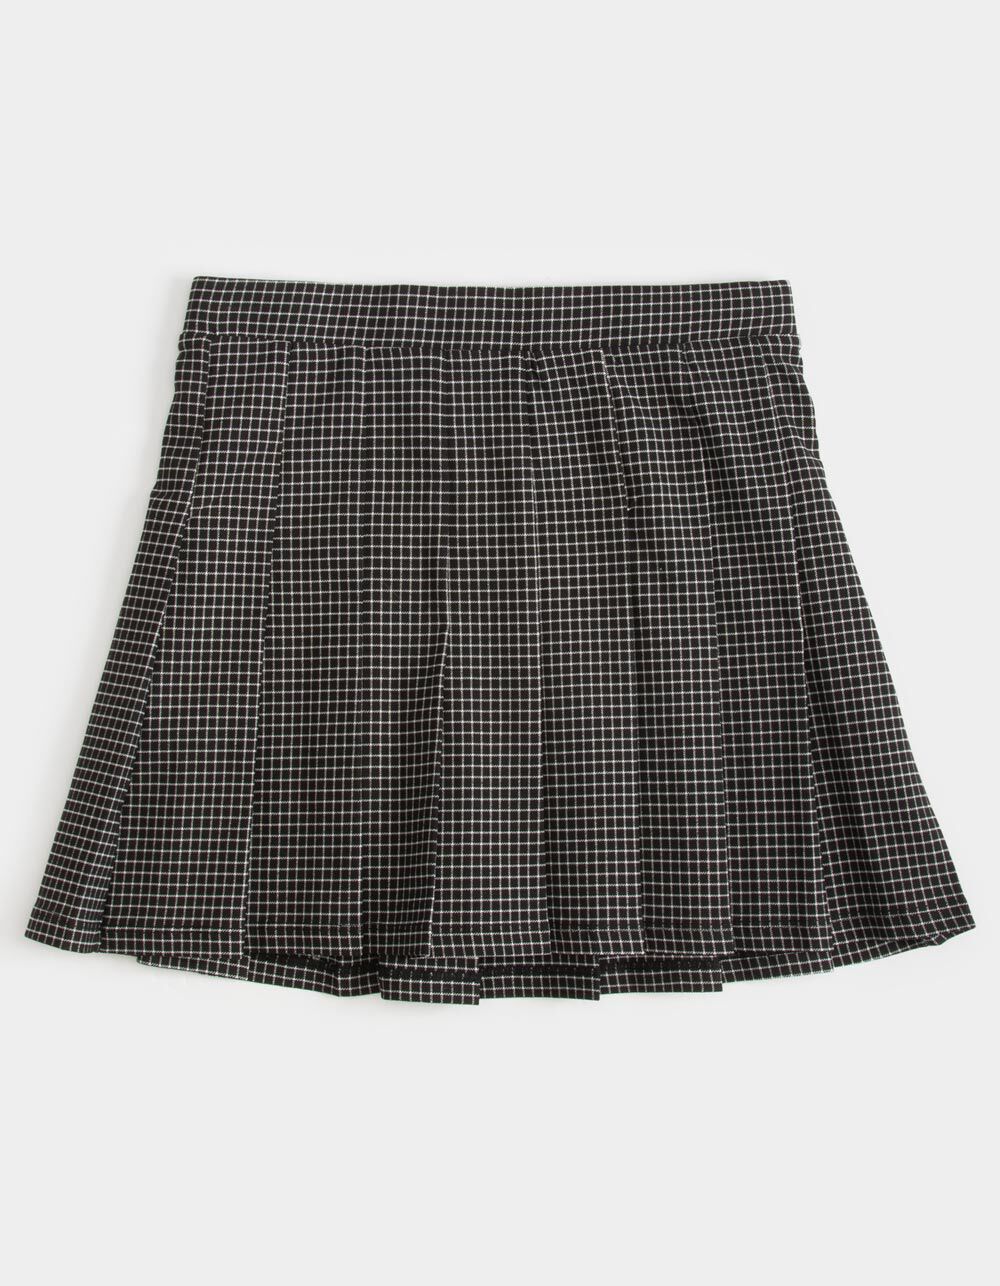 FULL TILT Plaid Girls Tennis Skirt - BLACK/WHITE | Tillys